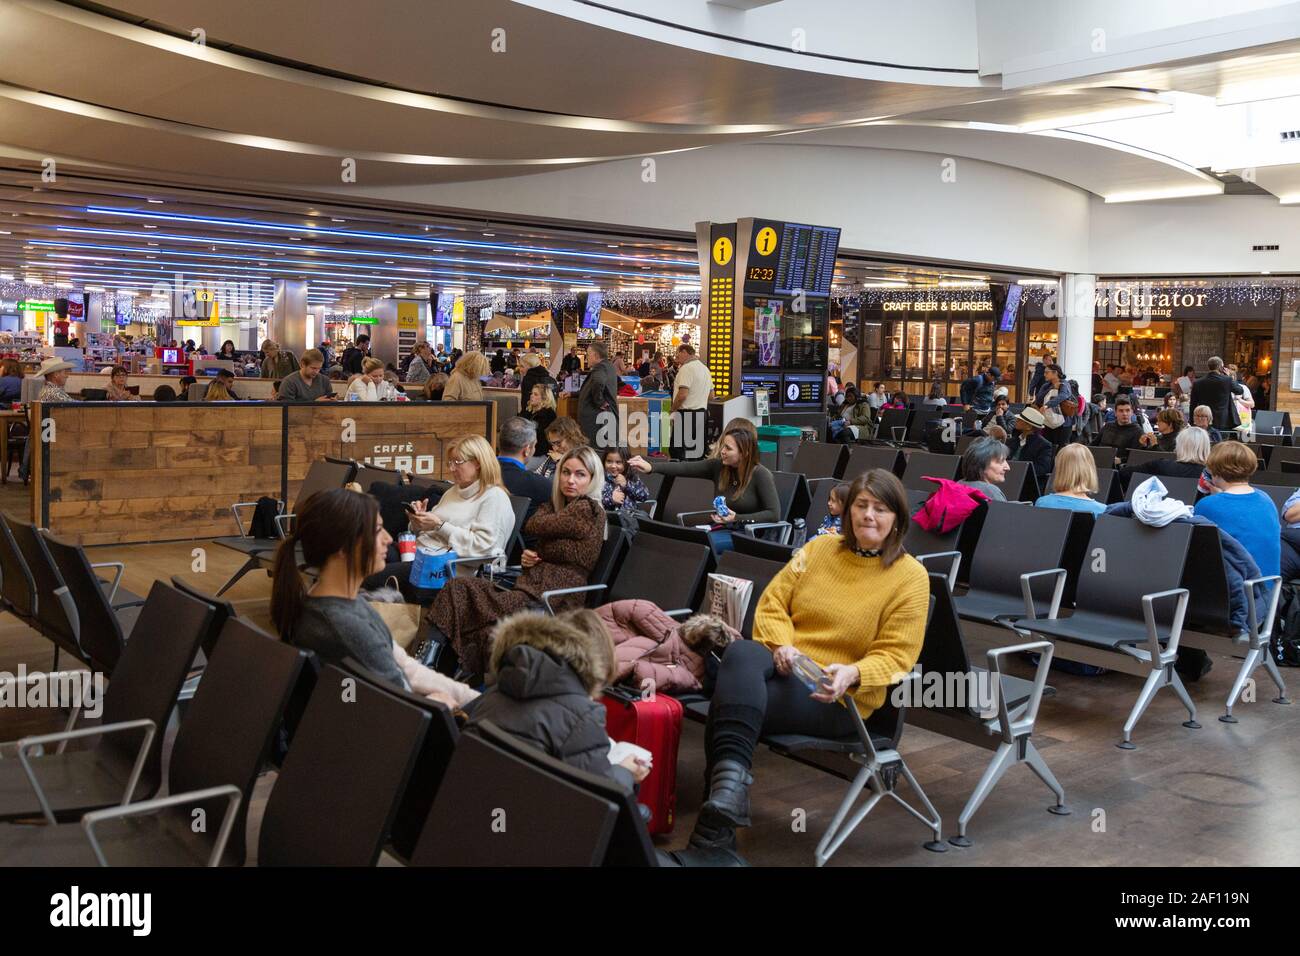 Aeroporto di heathrow Londra UK; terminale 3 interno; i passeggeri seduti in attesa per i loro voli, Heathrow London REGNO UNITO Foto Stock